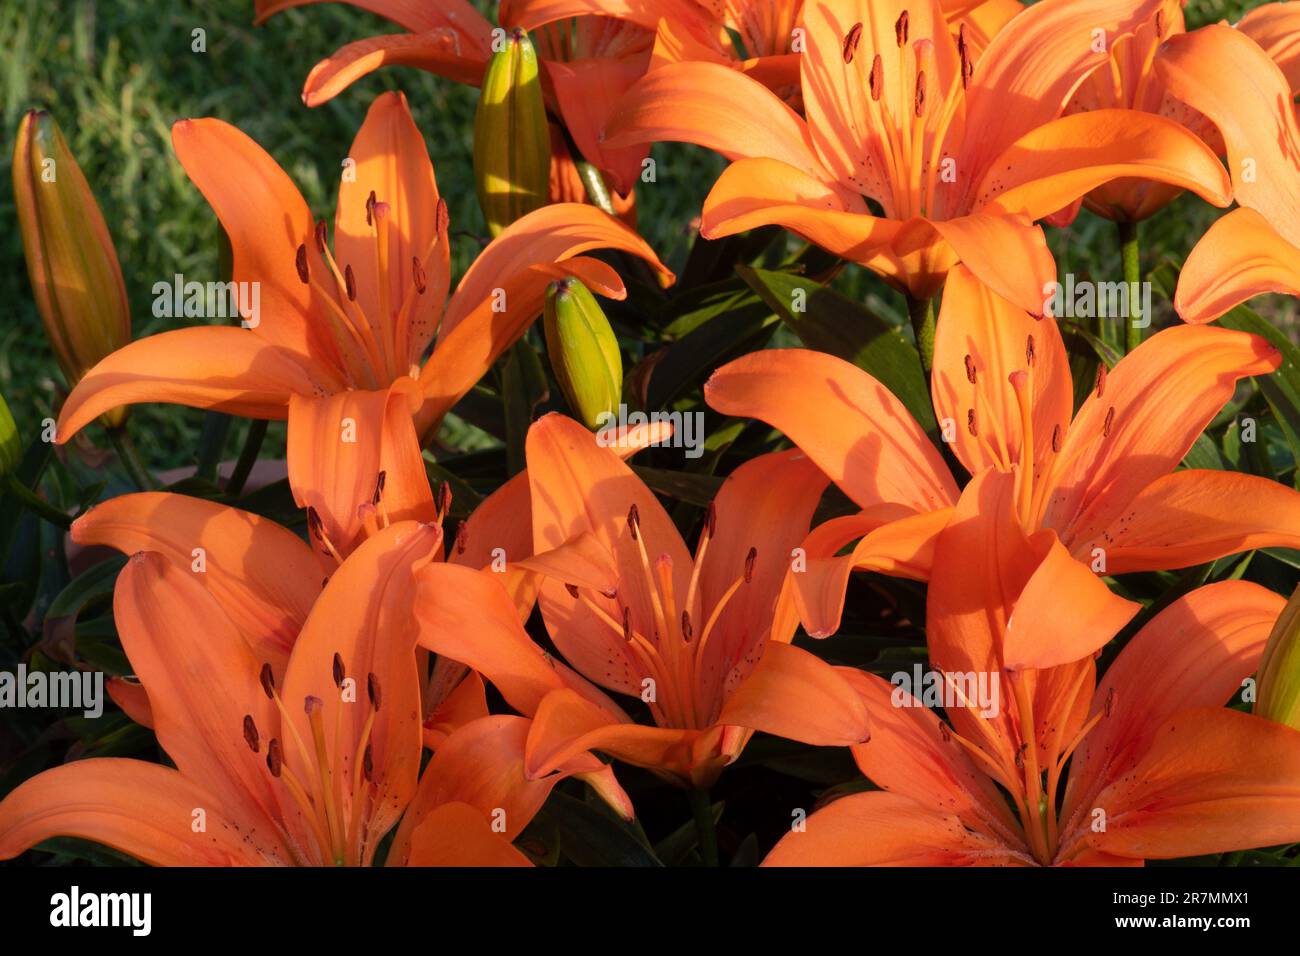 Dwarf orange Asiatic Lily, Stock Photo